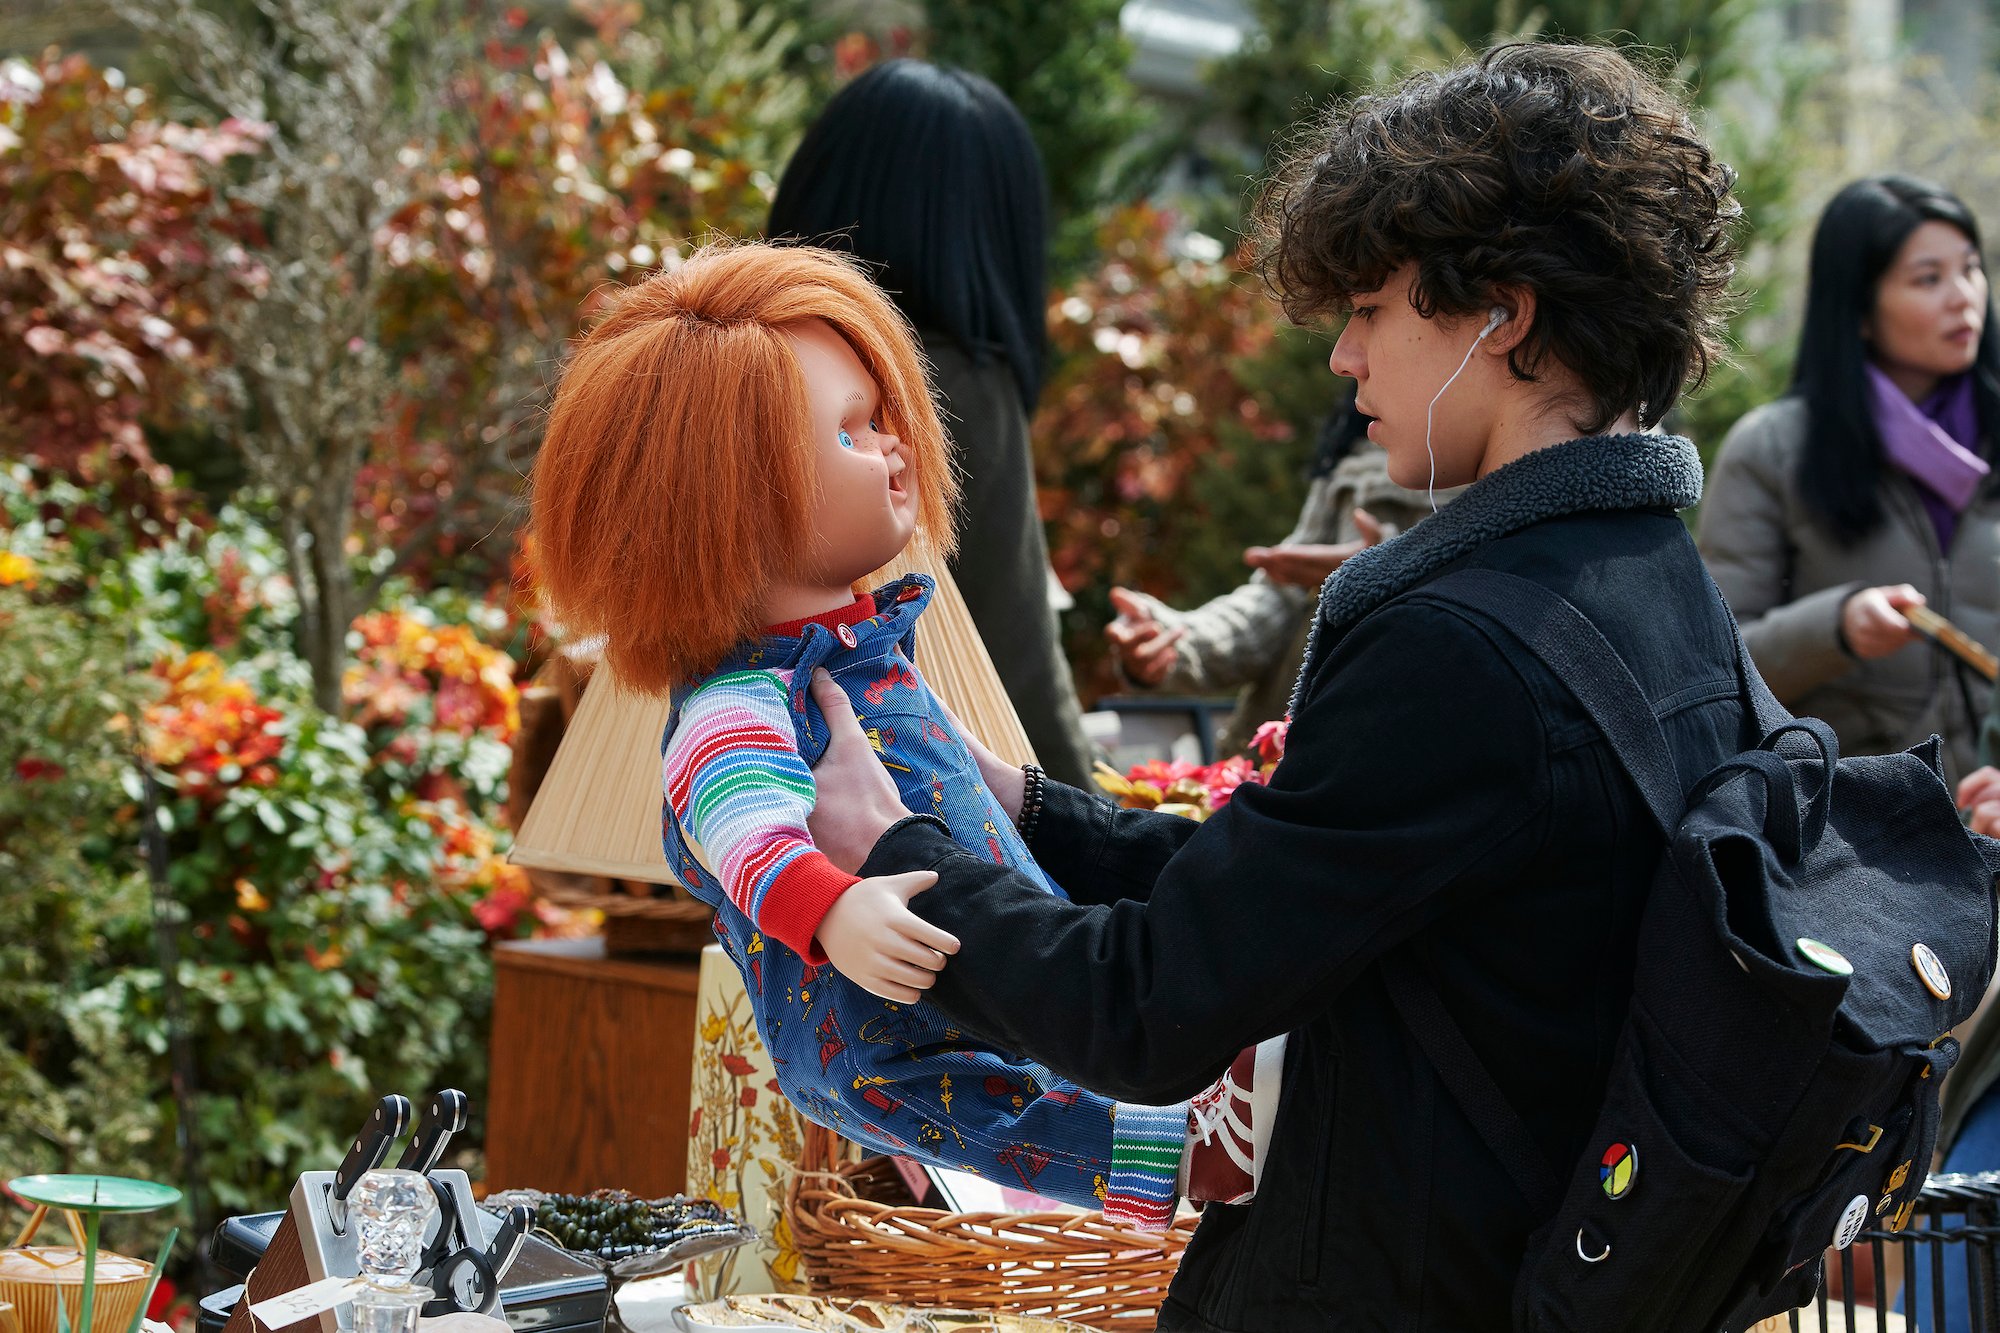 Chucky: Zackary Arthur finds Chucky at a yard sale